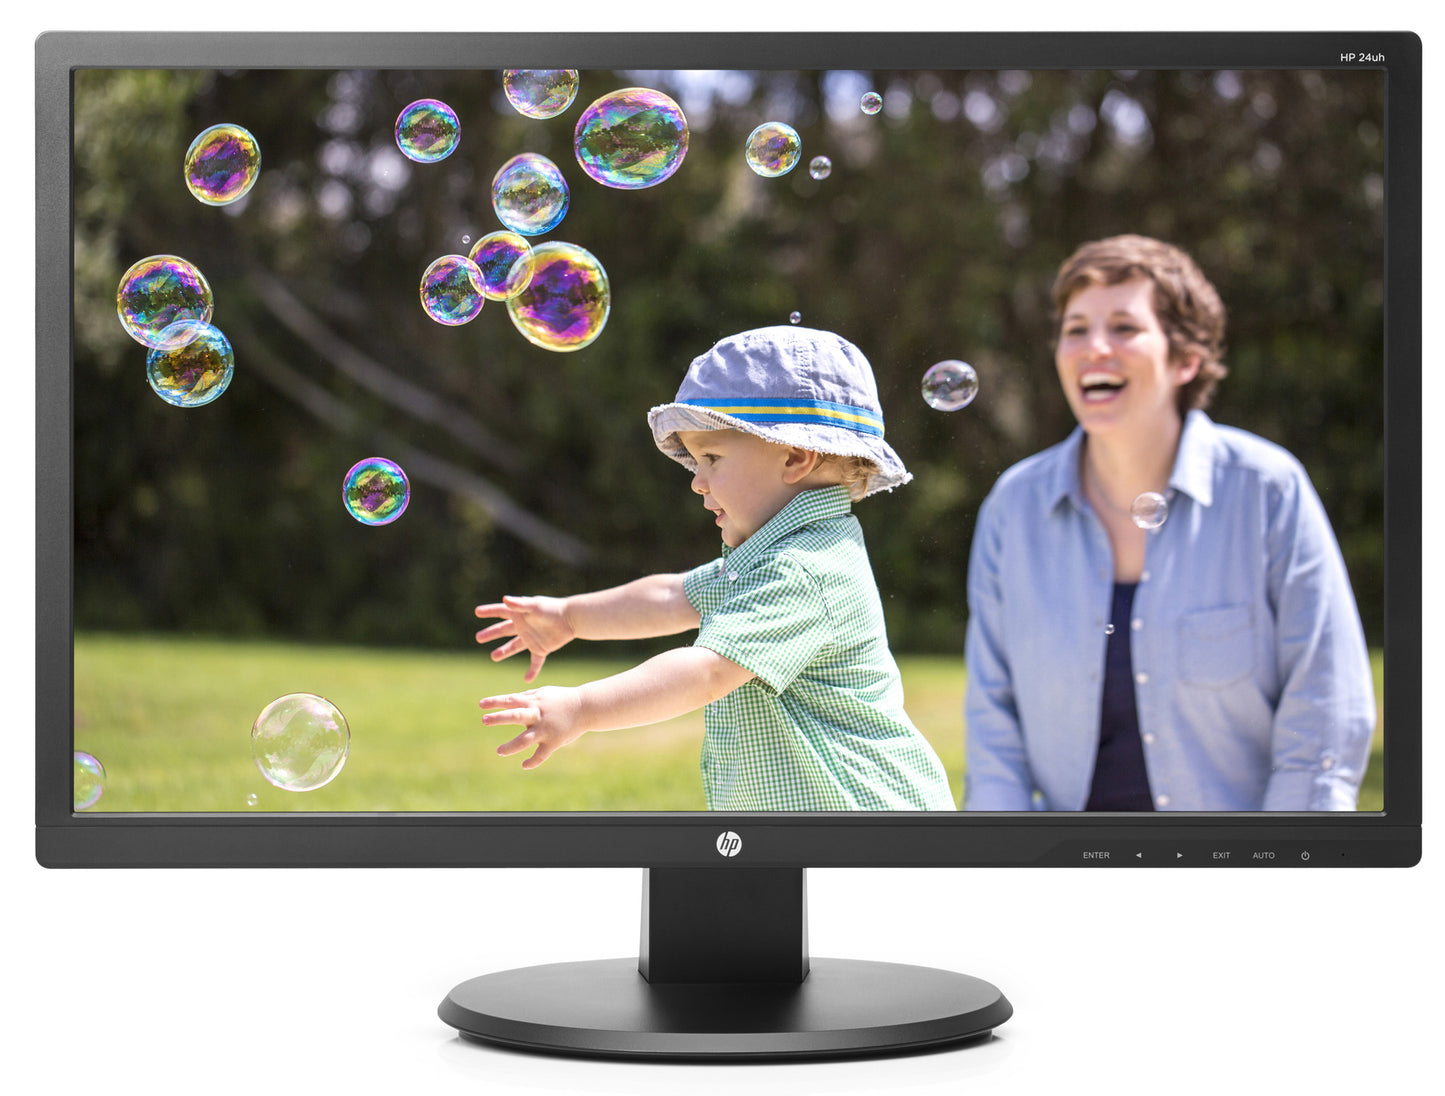 HP 24uh 24" LED LCD Monitor - 16:9 - 5 ms